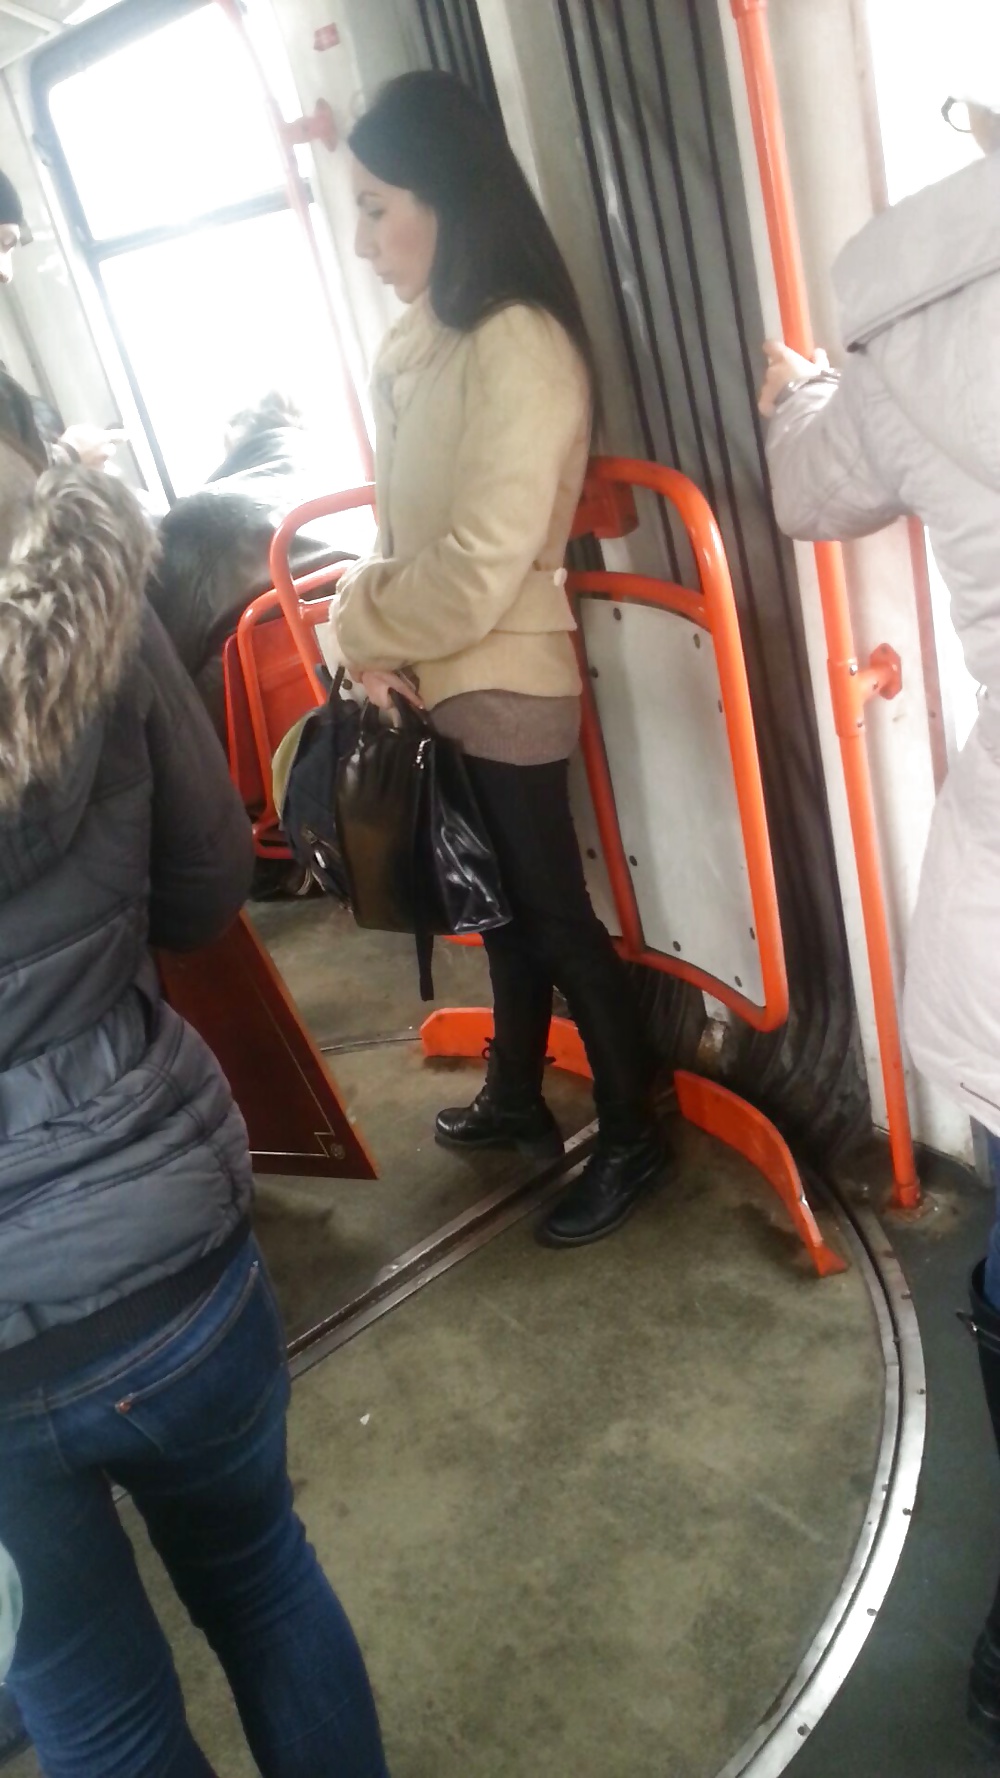 Spy sexy women in tram romanian #41079276